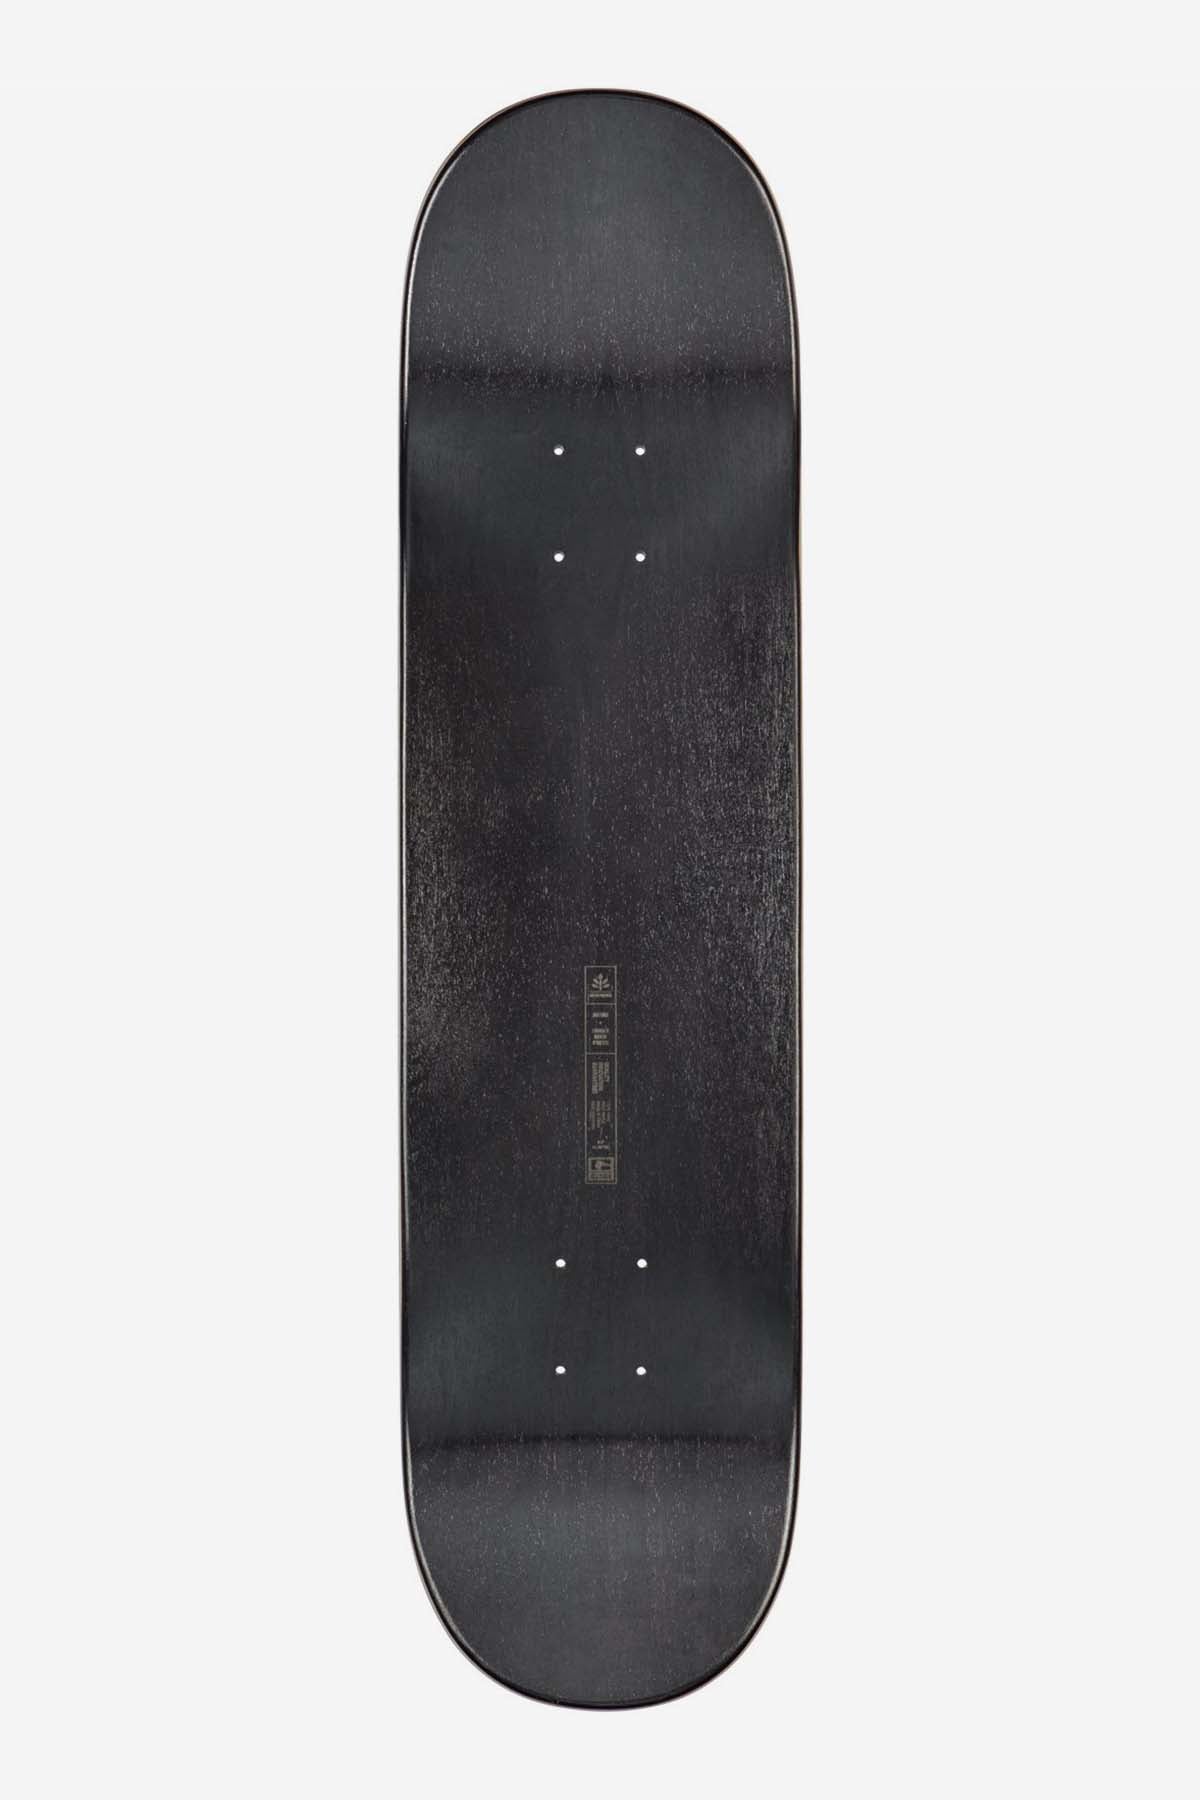 Blocchi G1 D - Nero/giallo - 8,0" Skateboard Deck